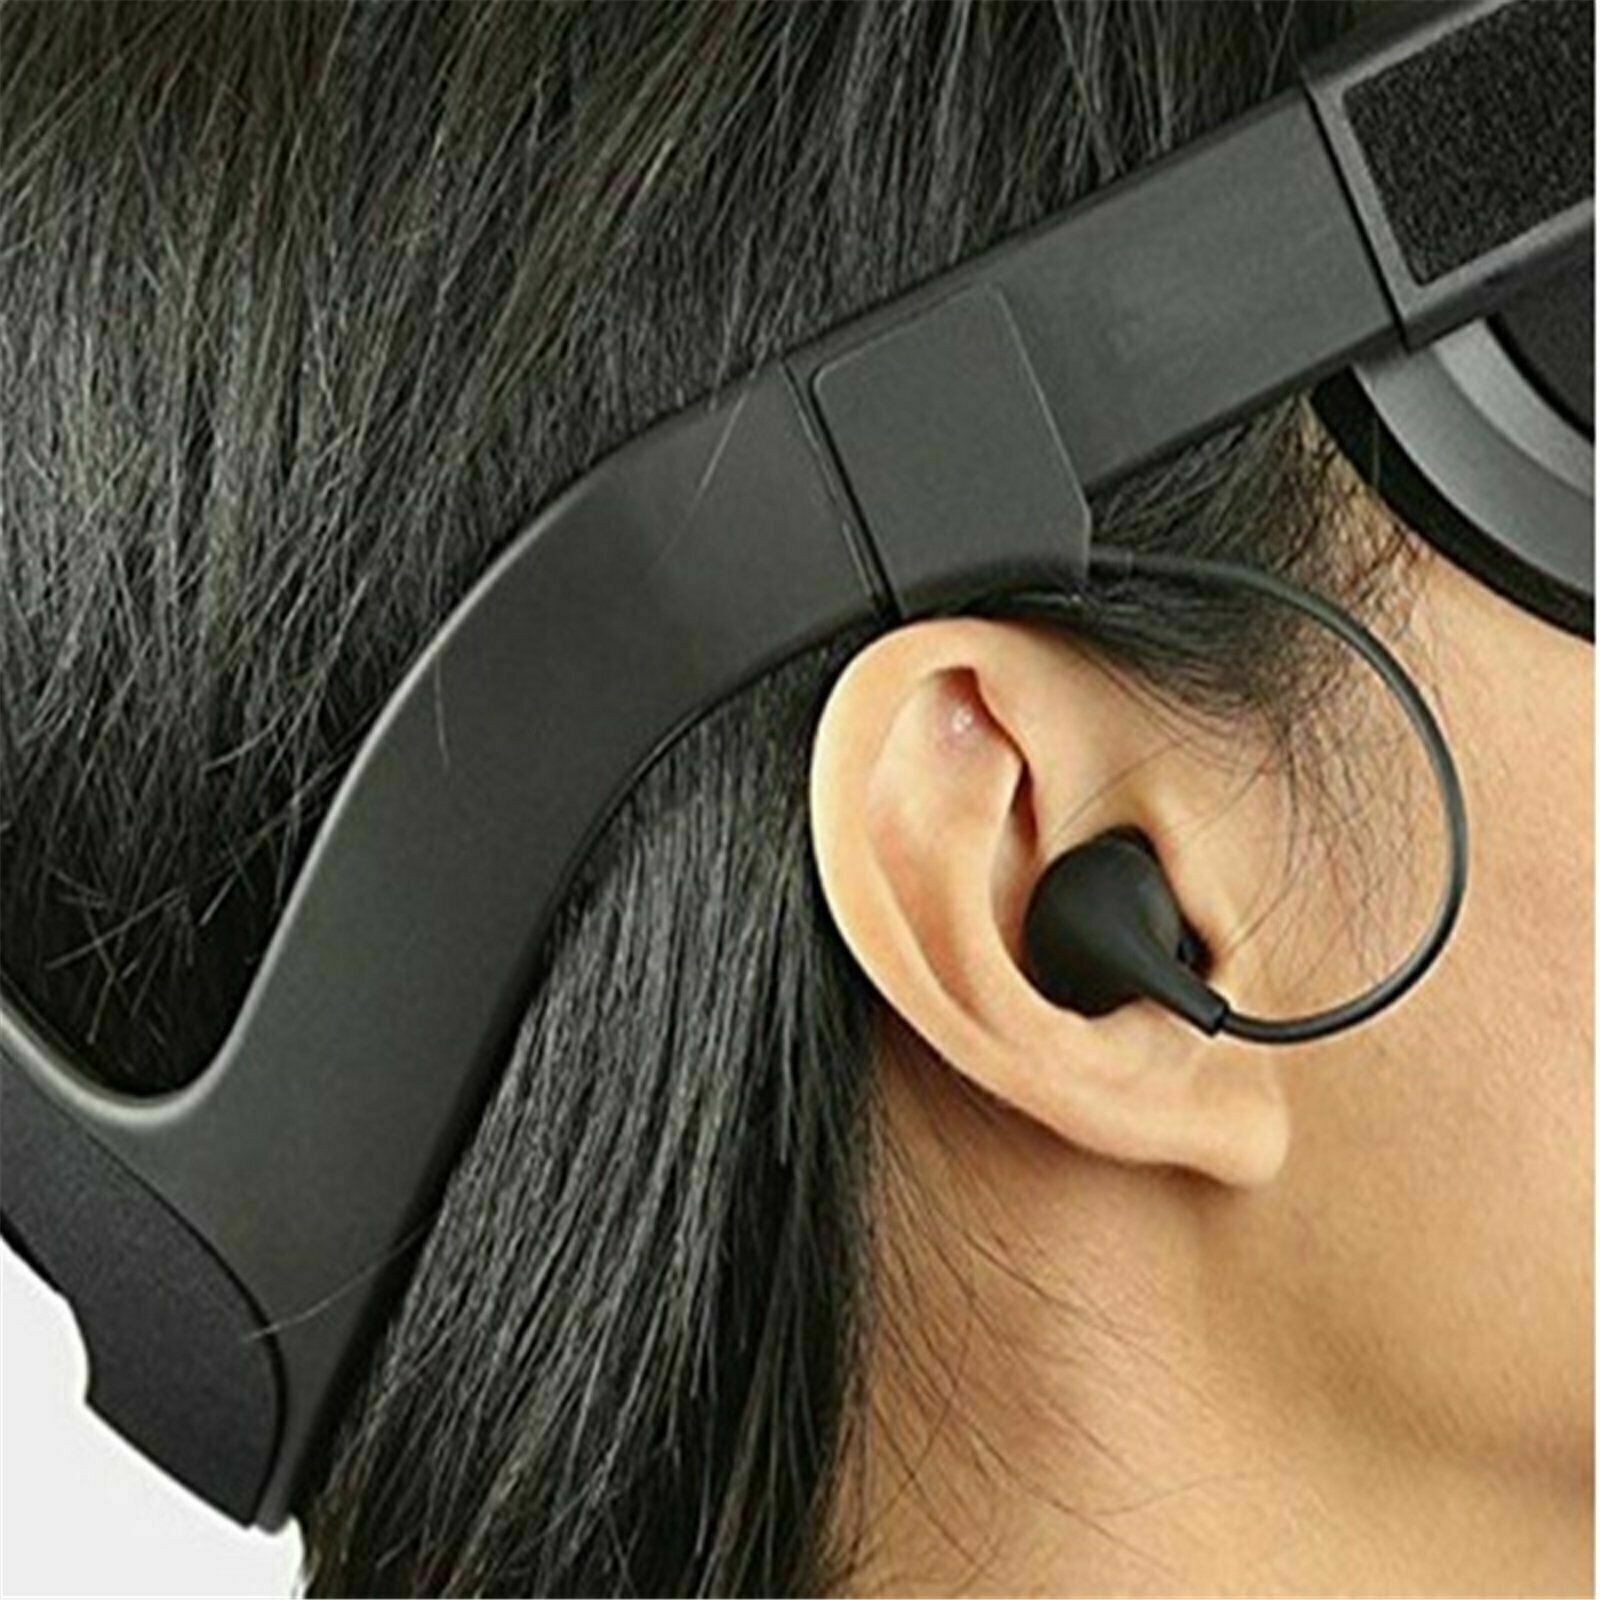 For Oculus Rift / Rift CV1 VR Glasses Noise Headset Earphone on-Ear Replacement